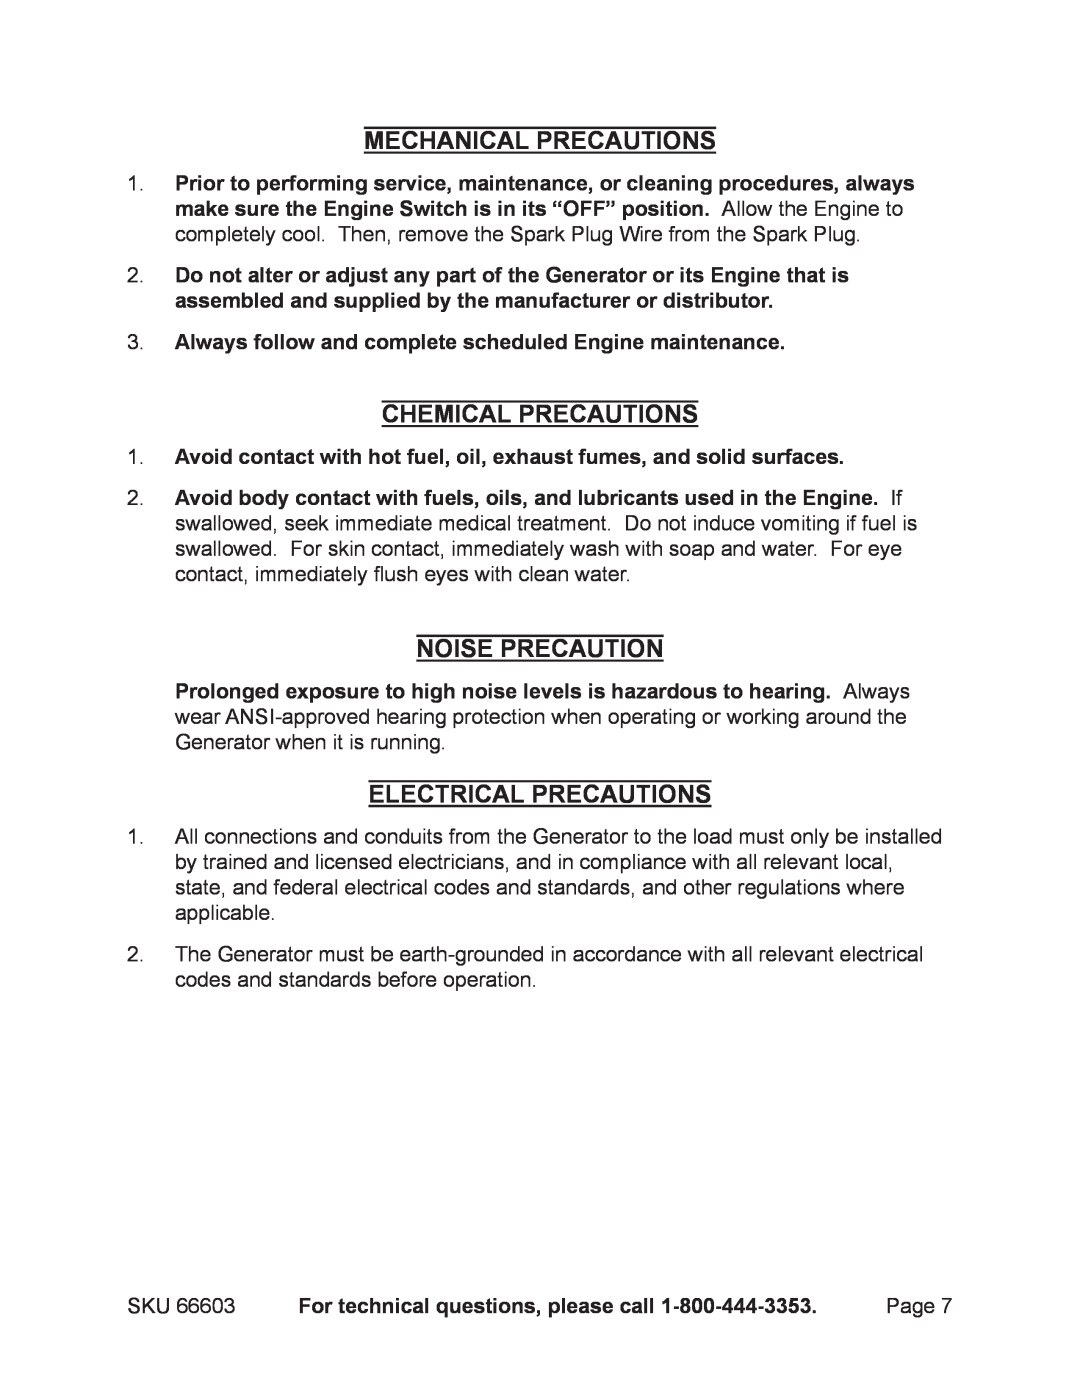 Chicago Electric 66603 manual Mechanical Precautions, Chemical Precautions, Noise Precaution, Electrical Precautions 